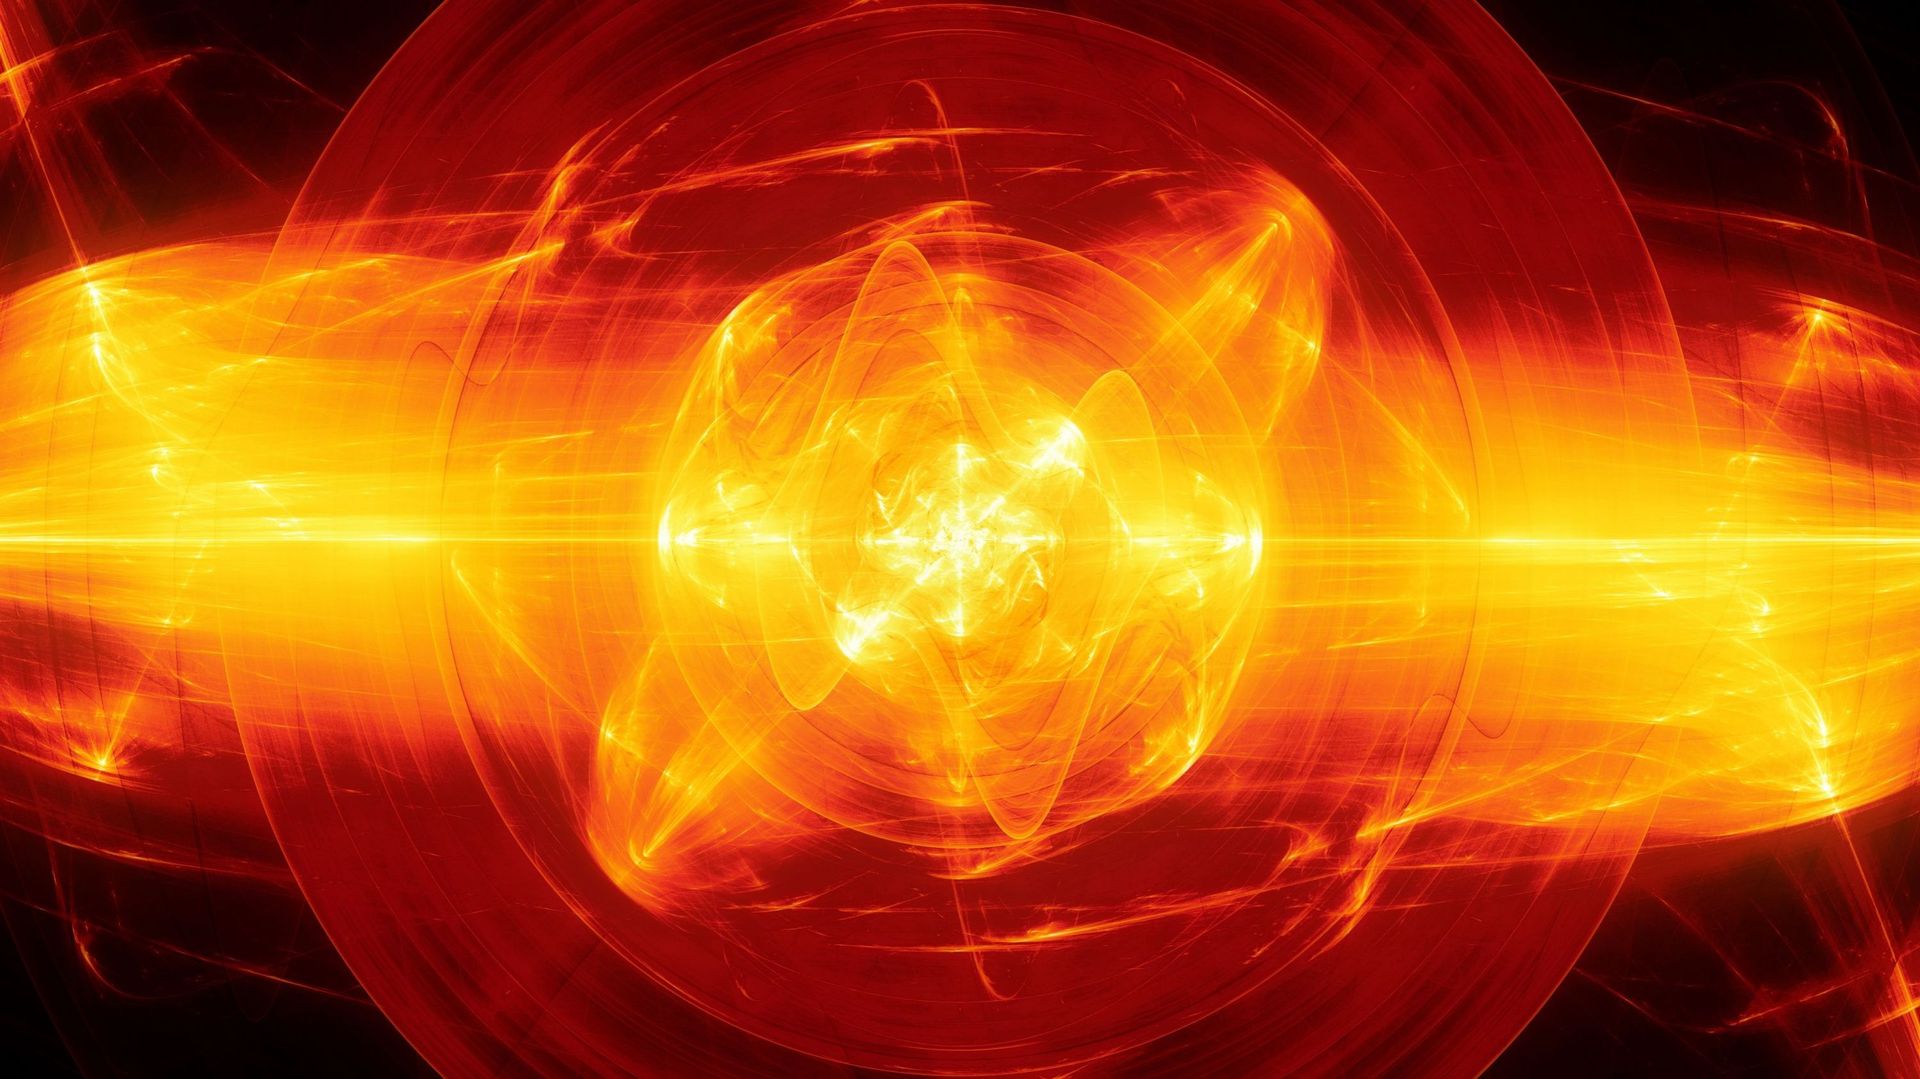 Fusion nucléaire : l’annonce d’une "avancée scientifique majeure", à quel point ? Image d’illustration.